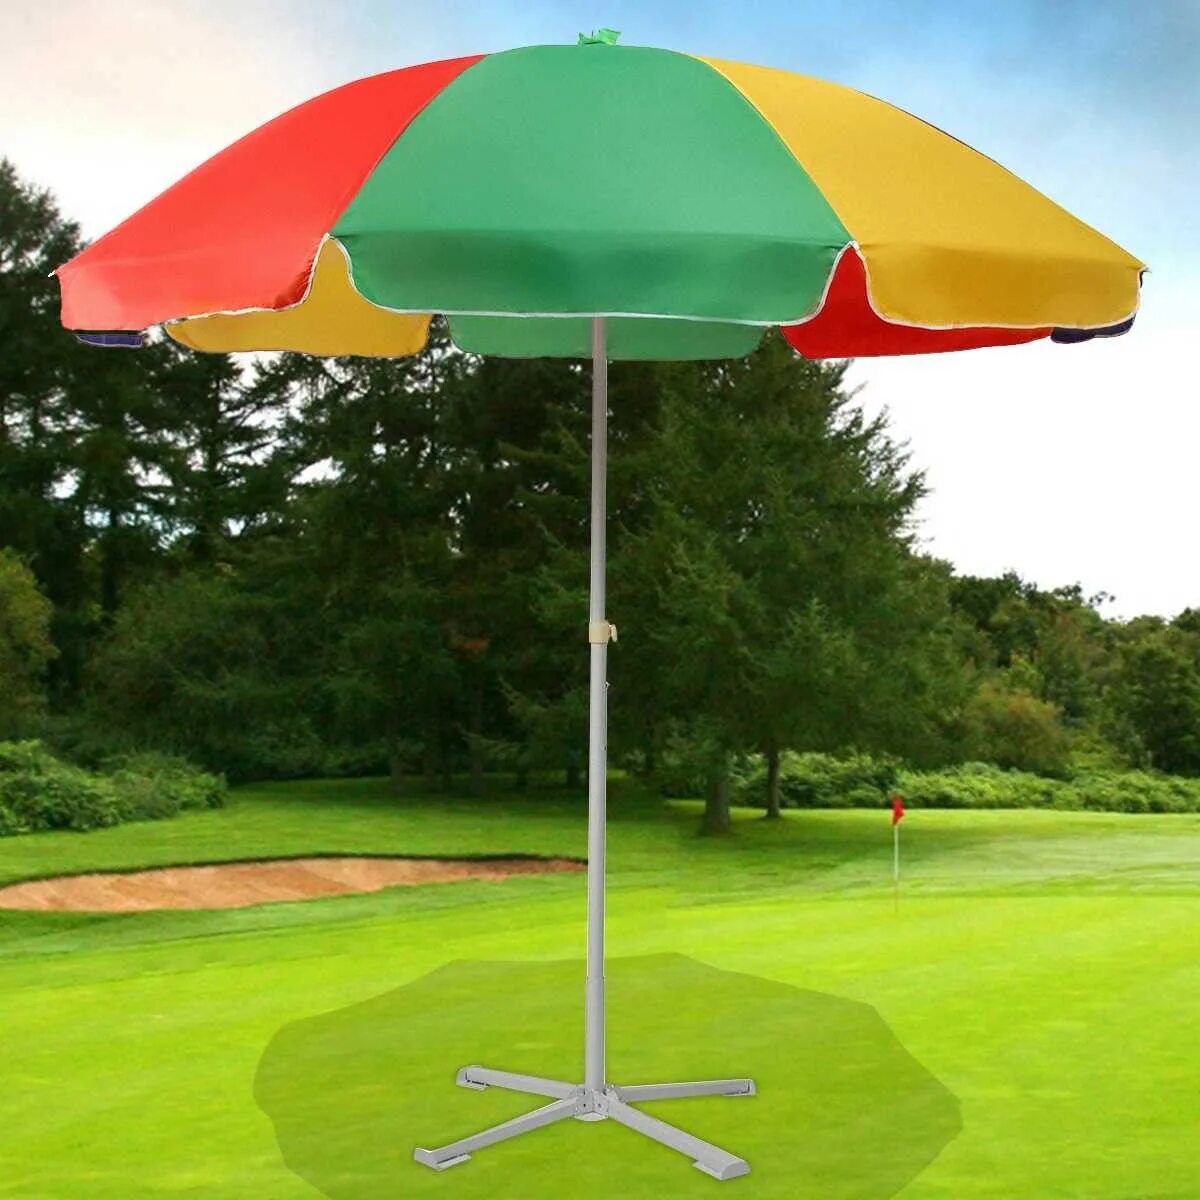 Зонт садовый Green Glade 6002. Парасоль зонт от солнца. Зонт пляжный (длина 200-210 см диаметр 180см). А002 3030 зонт. Зонт дачный большой